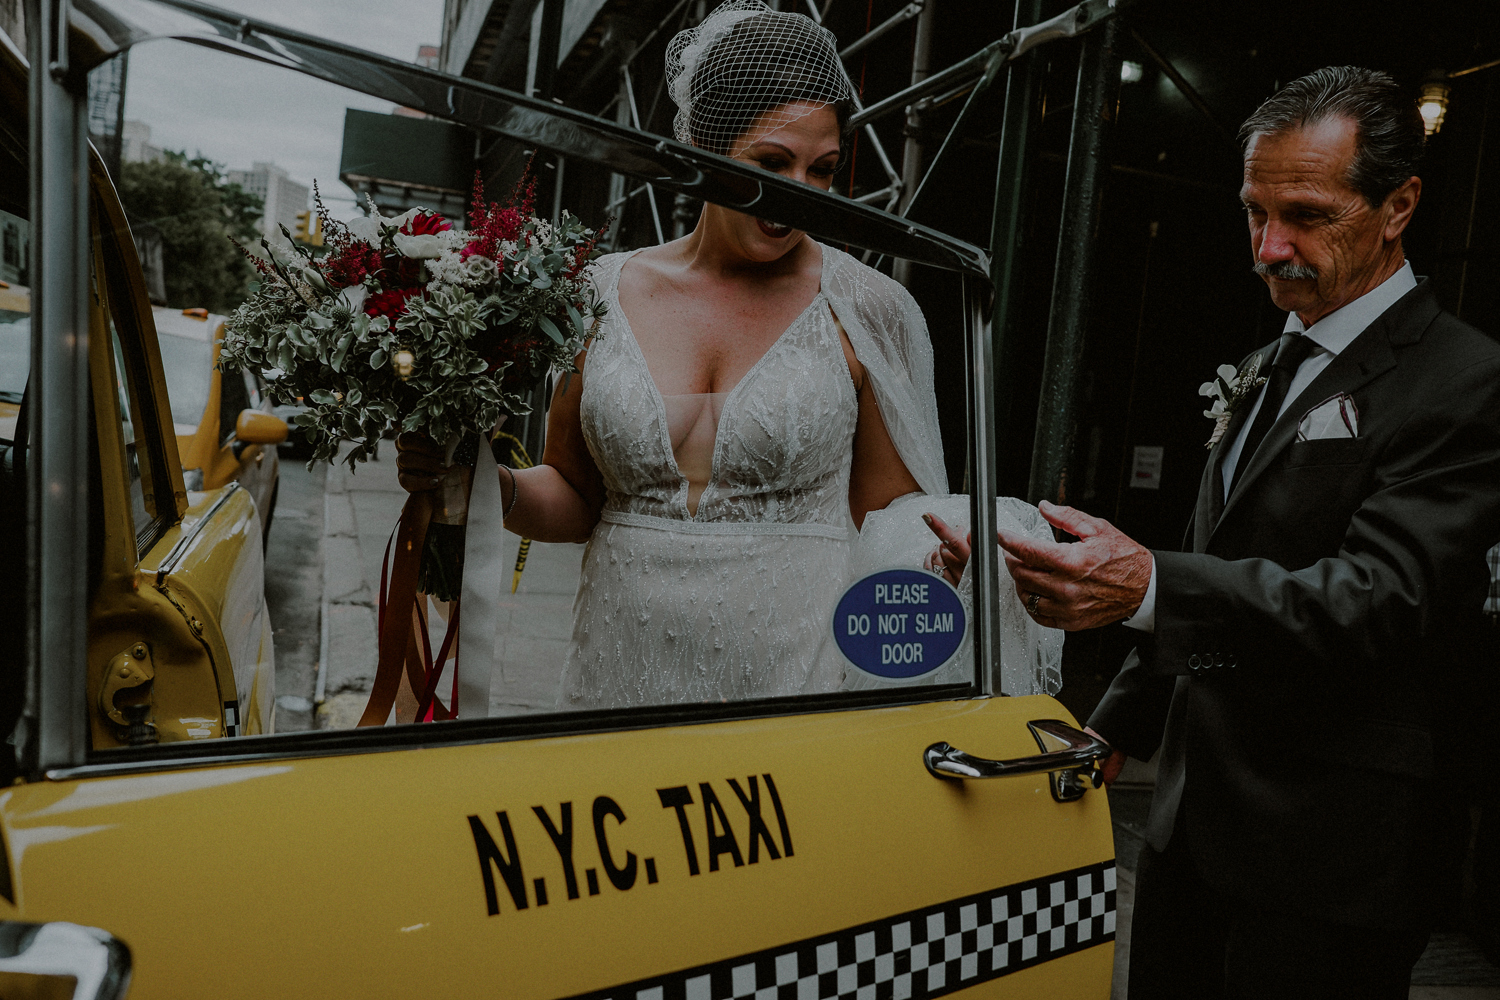 nyc wedding photographer